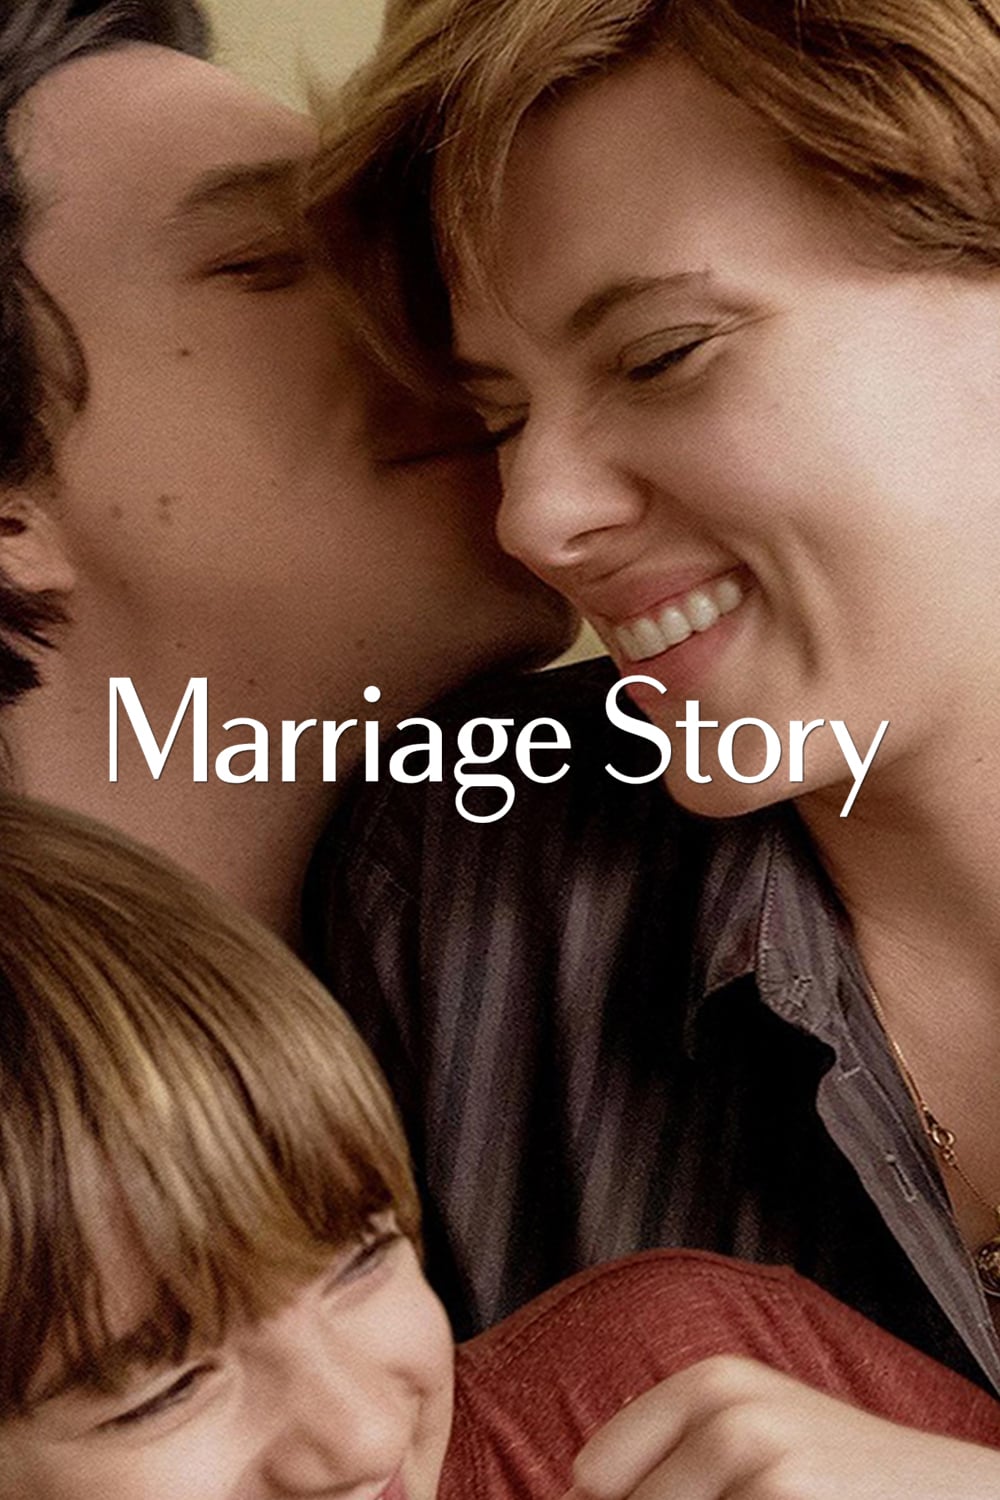 11 Film rekomendasi Netflix tentang perceraian, cinta jadi benci